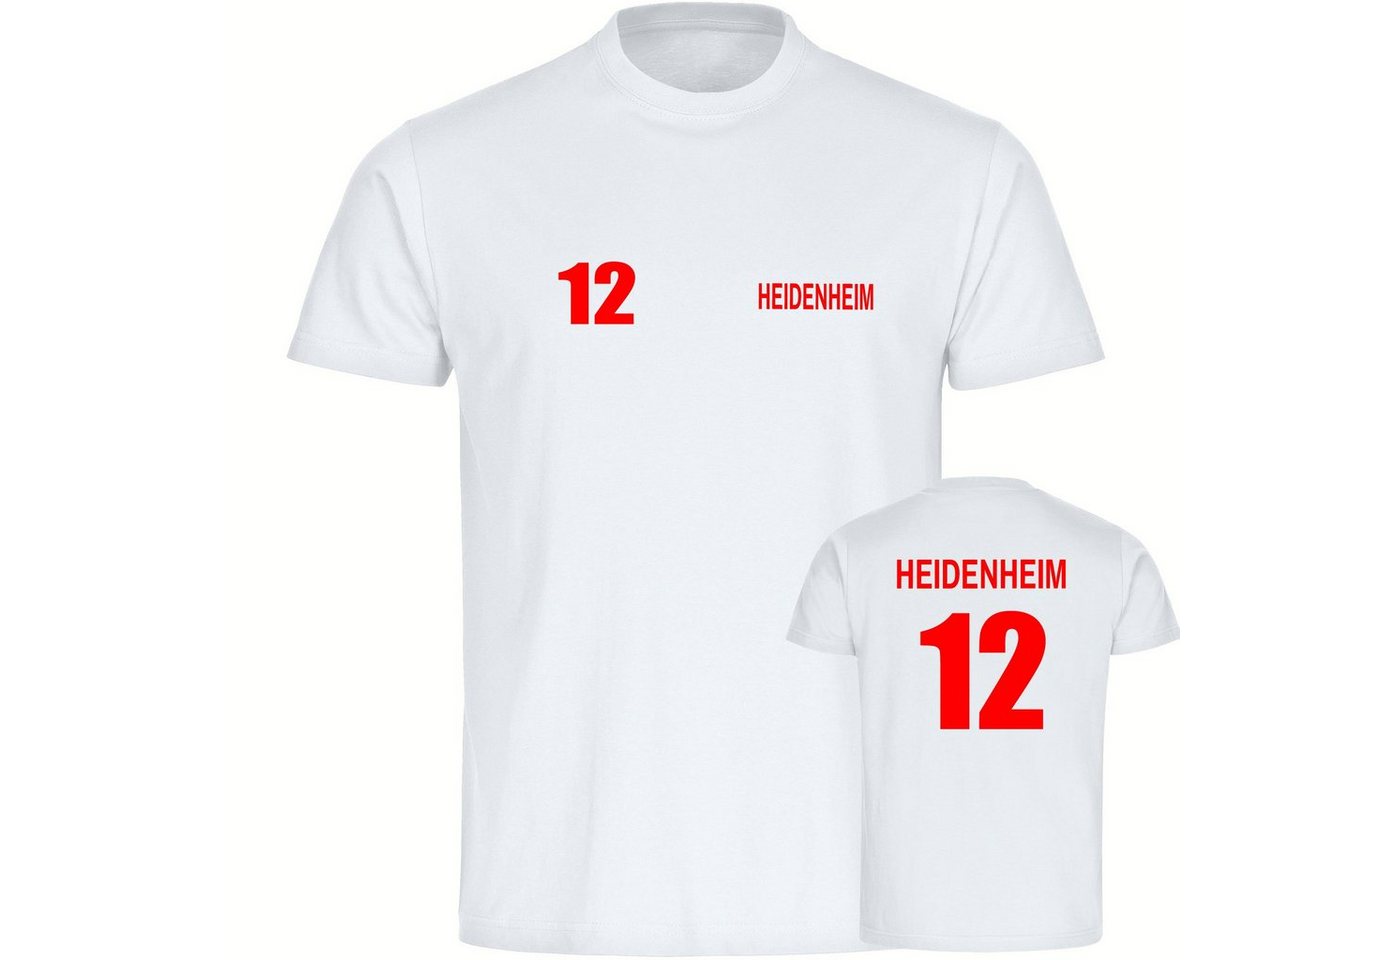 multifanshop T-Shirt Herren Heidenheim - Trikot 12 - Männer von multifanshop